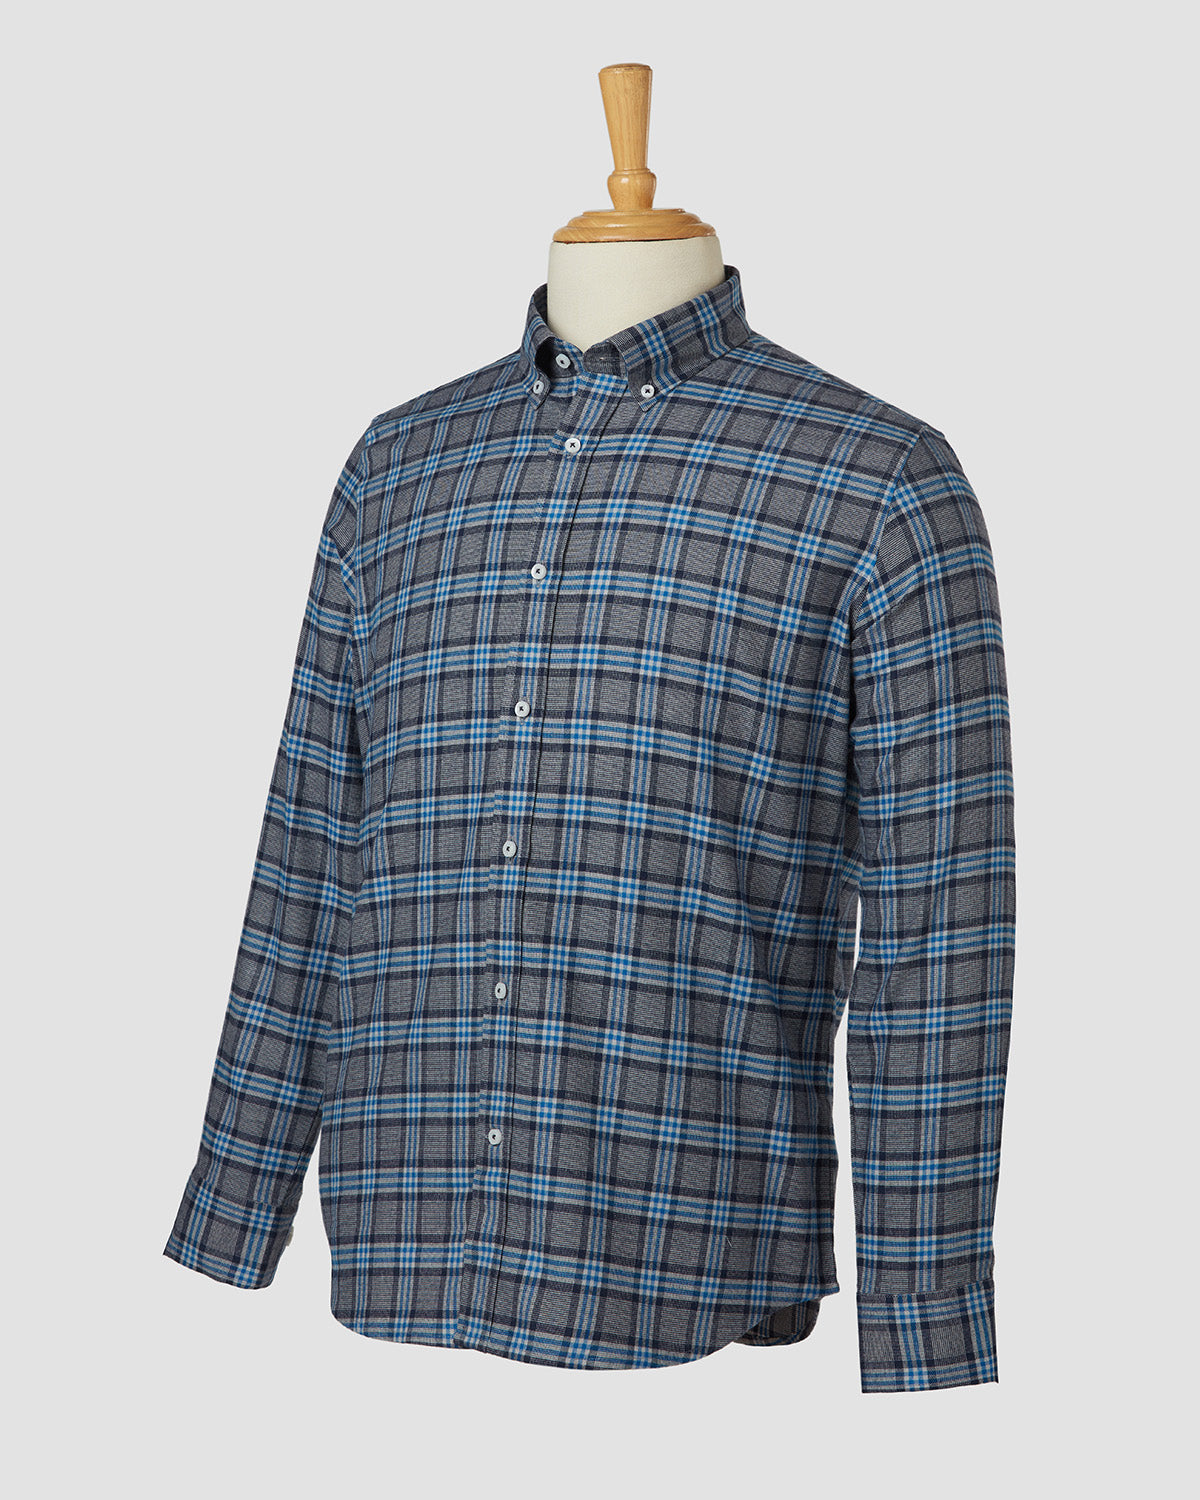 Bombay Shirt Company - Japanese Blue Treat Checked Shirt